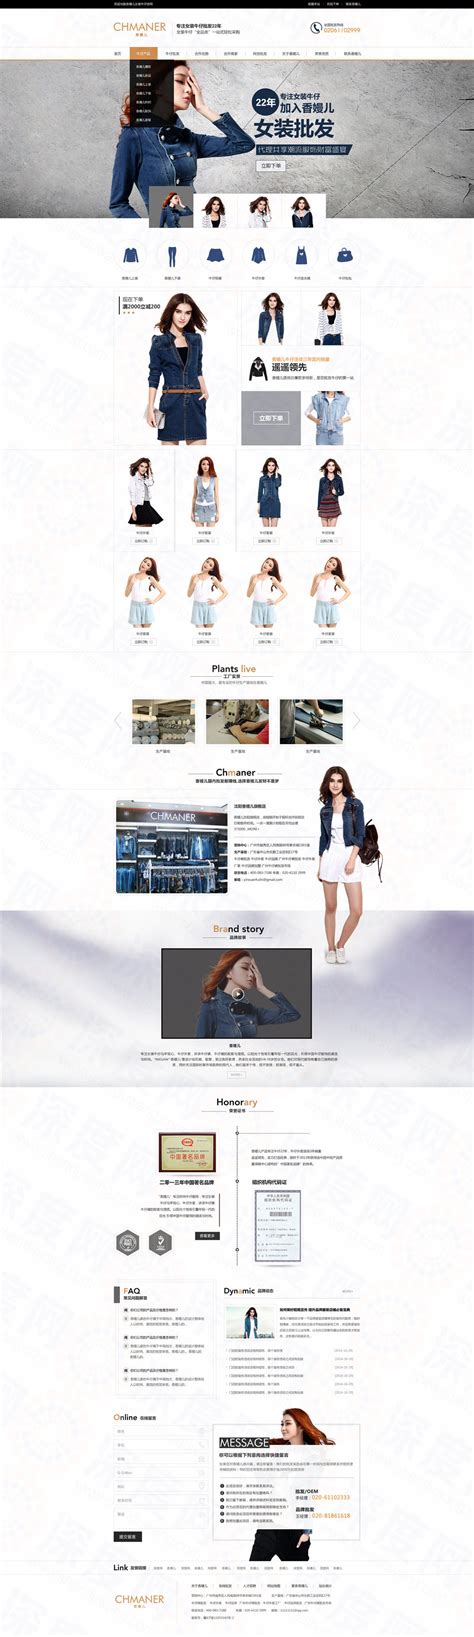 广州香嫚儿牛仔服饰营销型网站建设案例|男装/女装/内衣|深度网